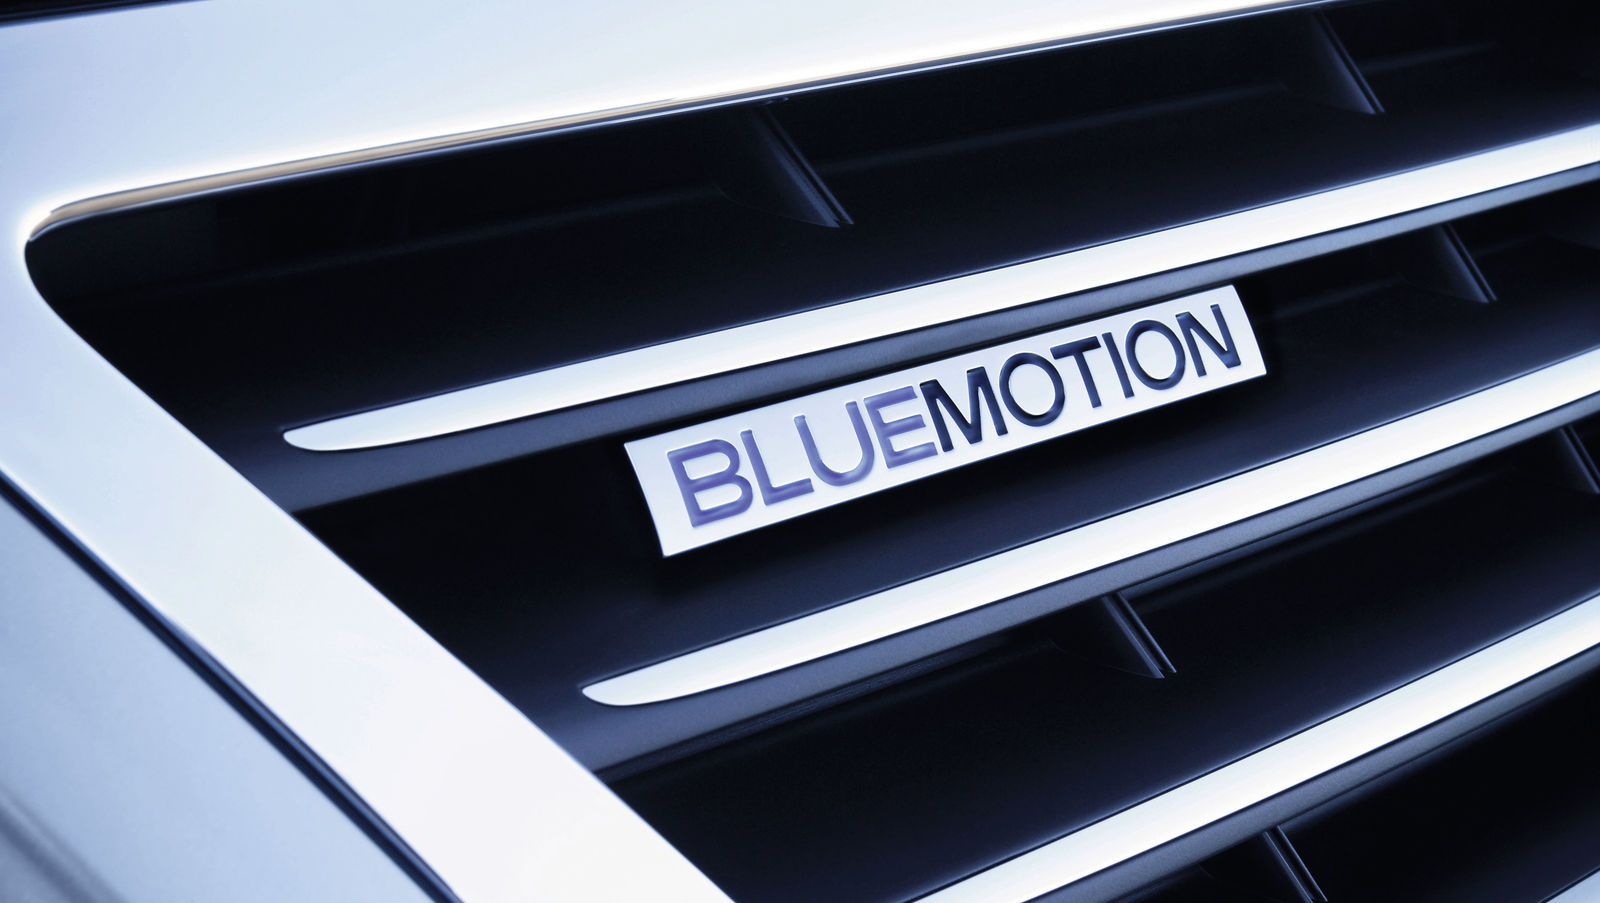 Volkswagen Passat BlueMotion and Passat Variant BlueMotion